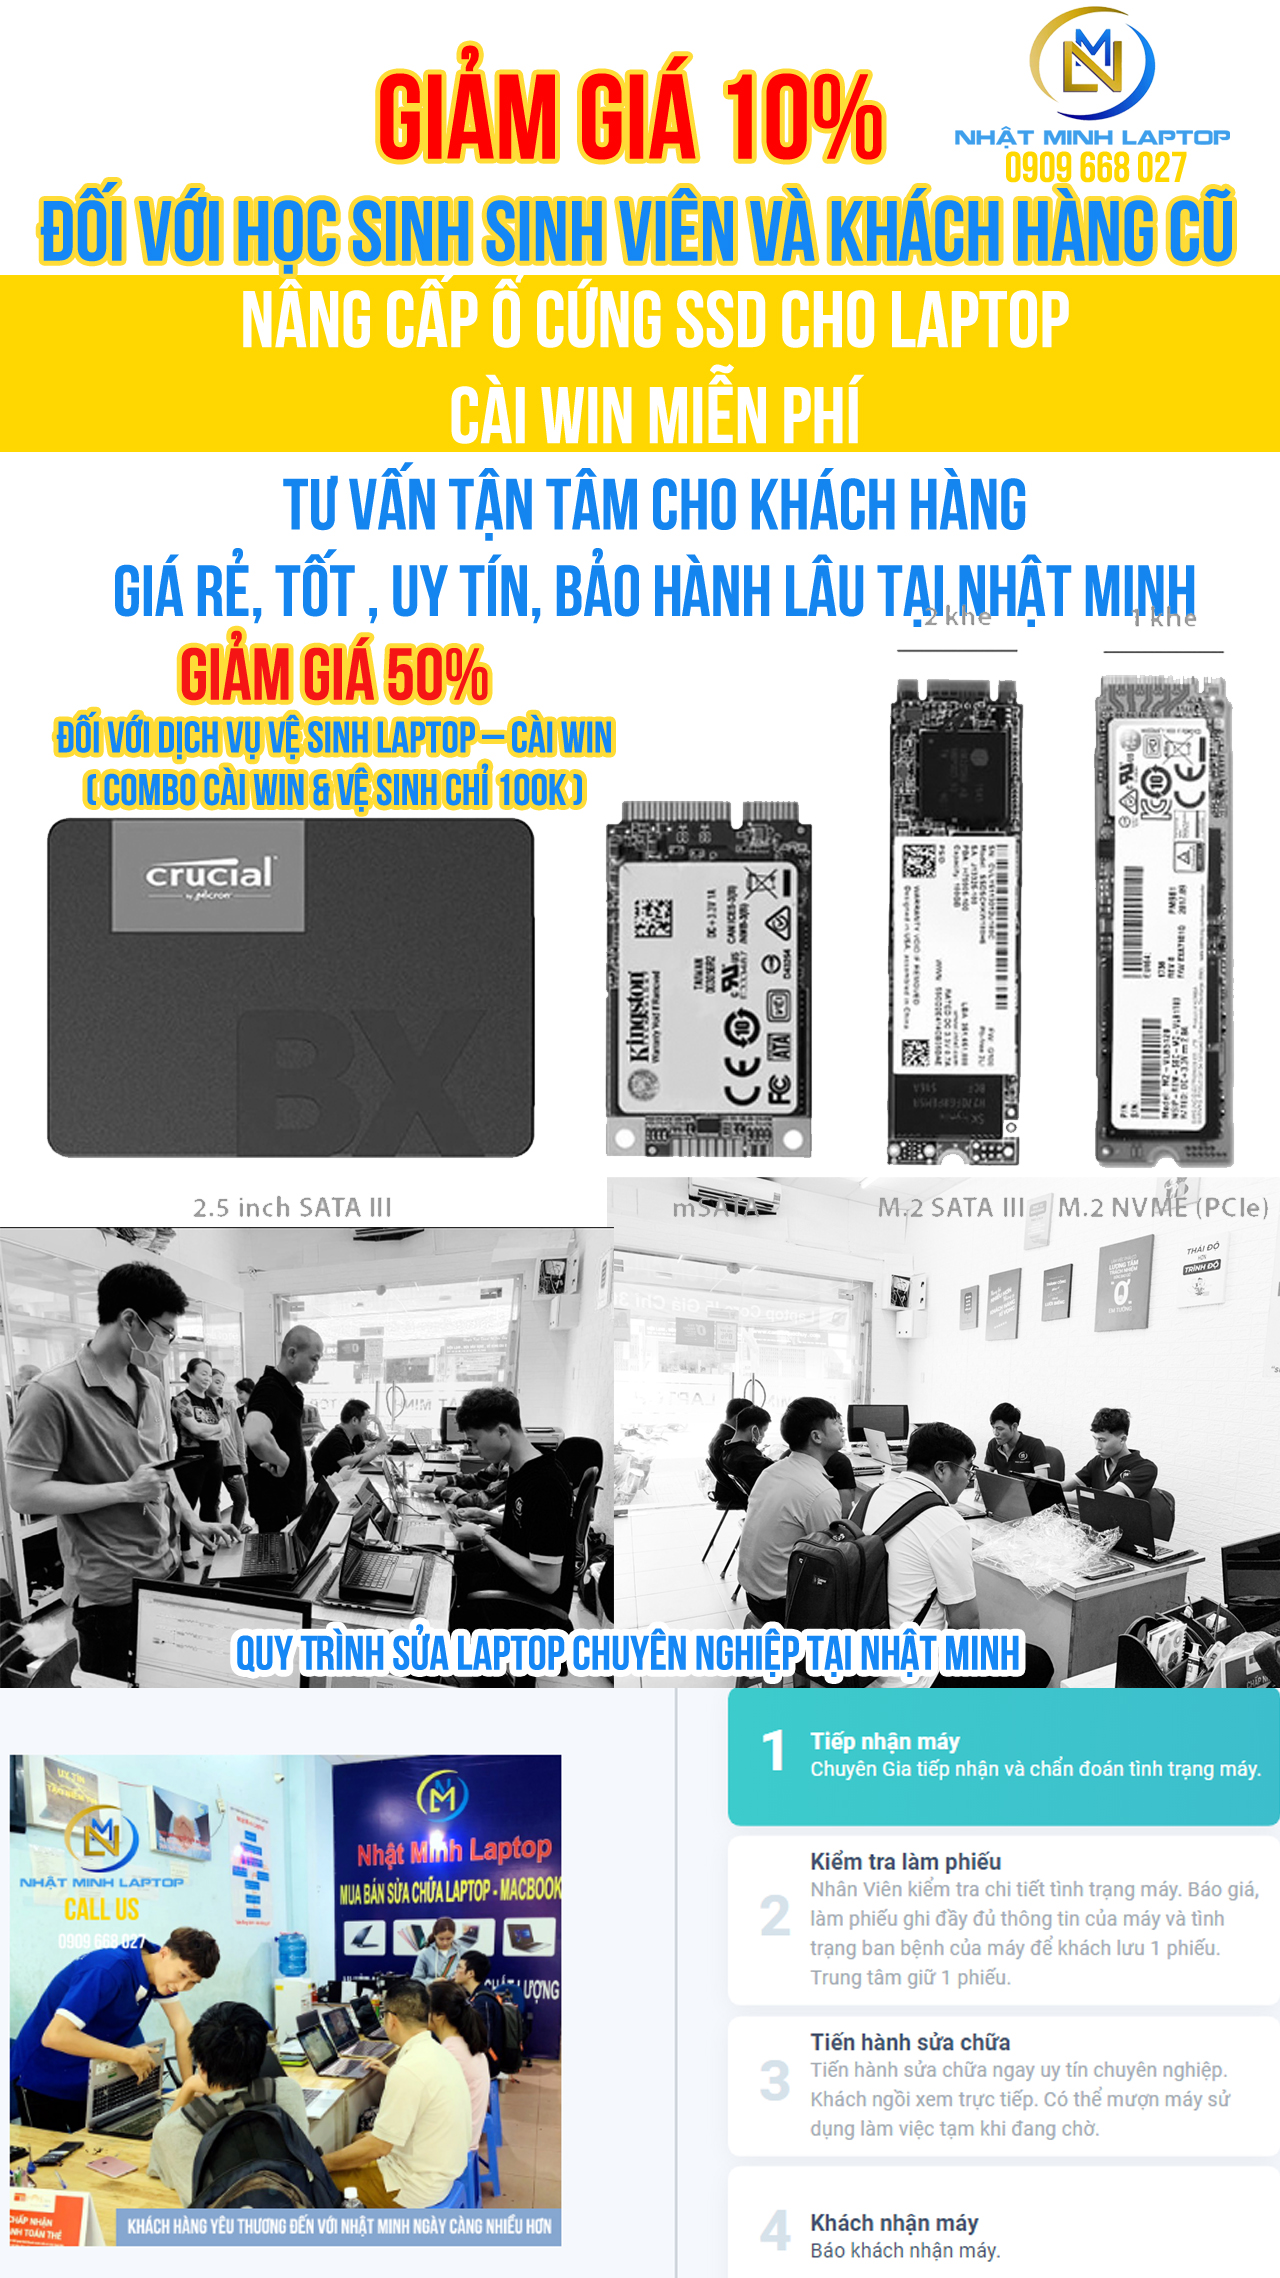 Nâng cấp ổ cứng SSD cho laptop Quận Tân Phú